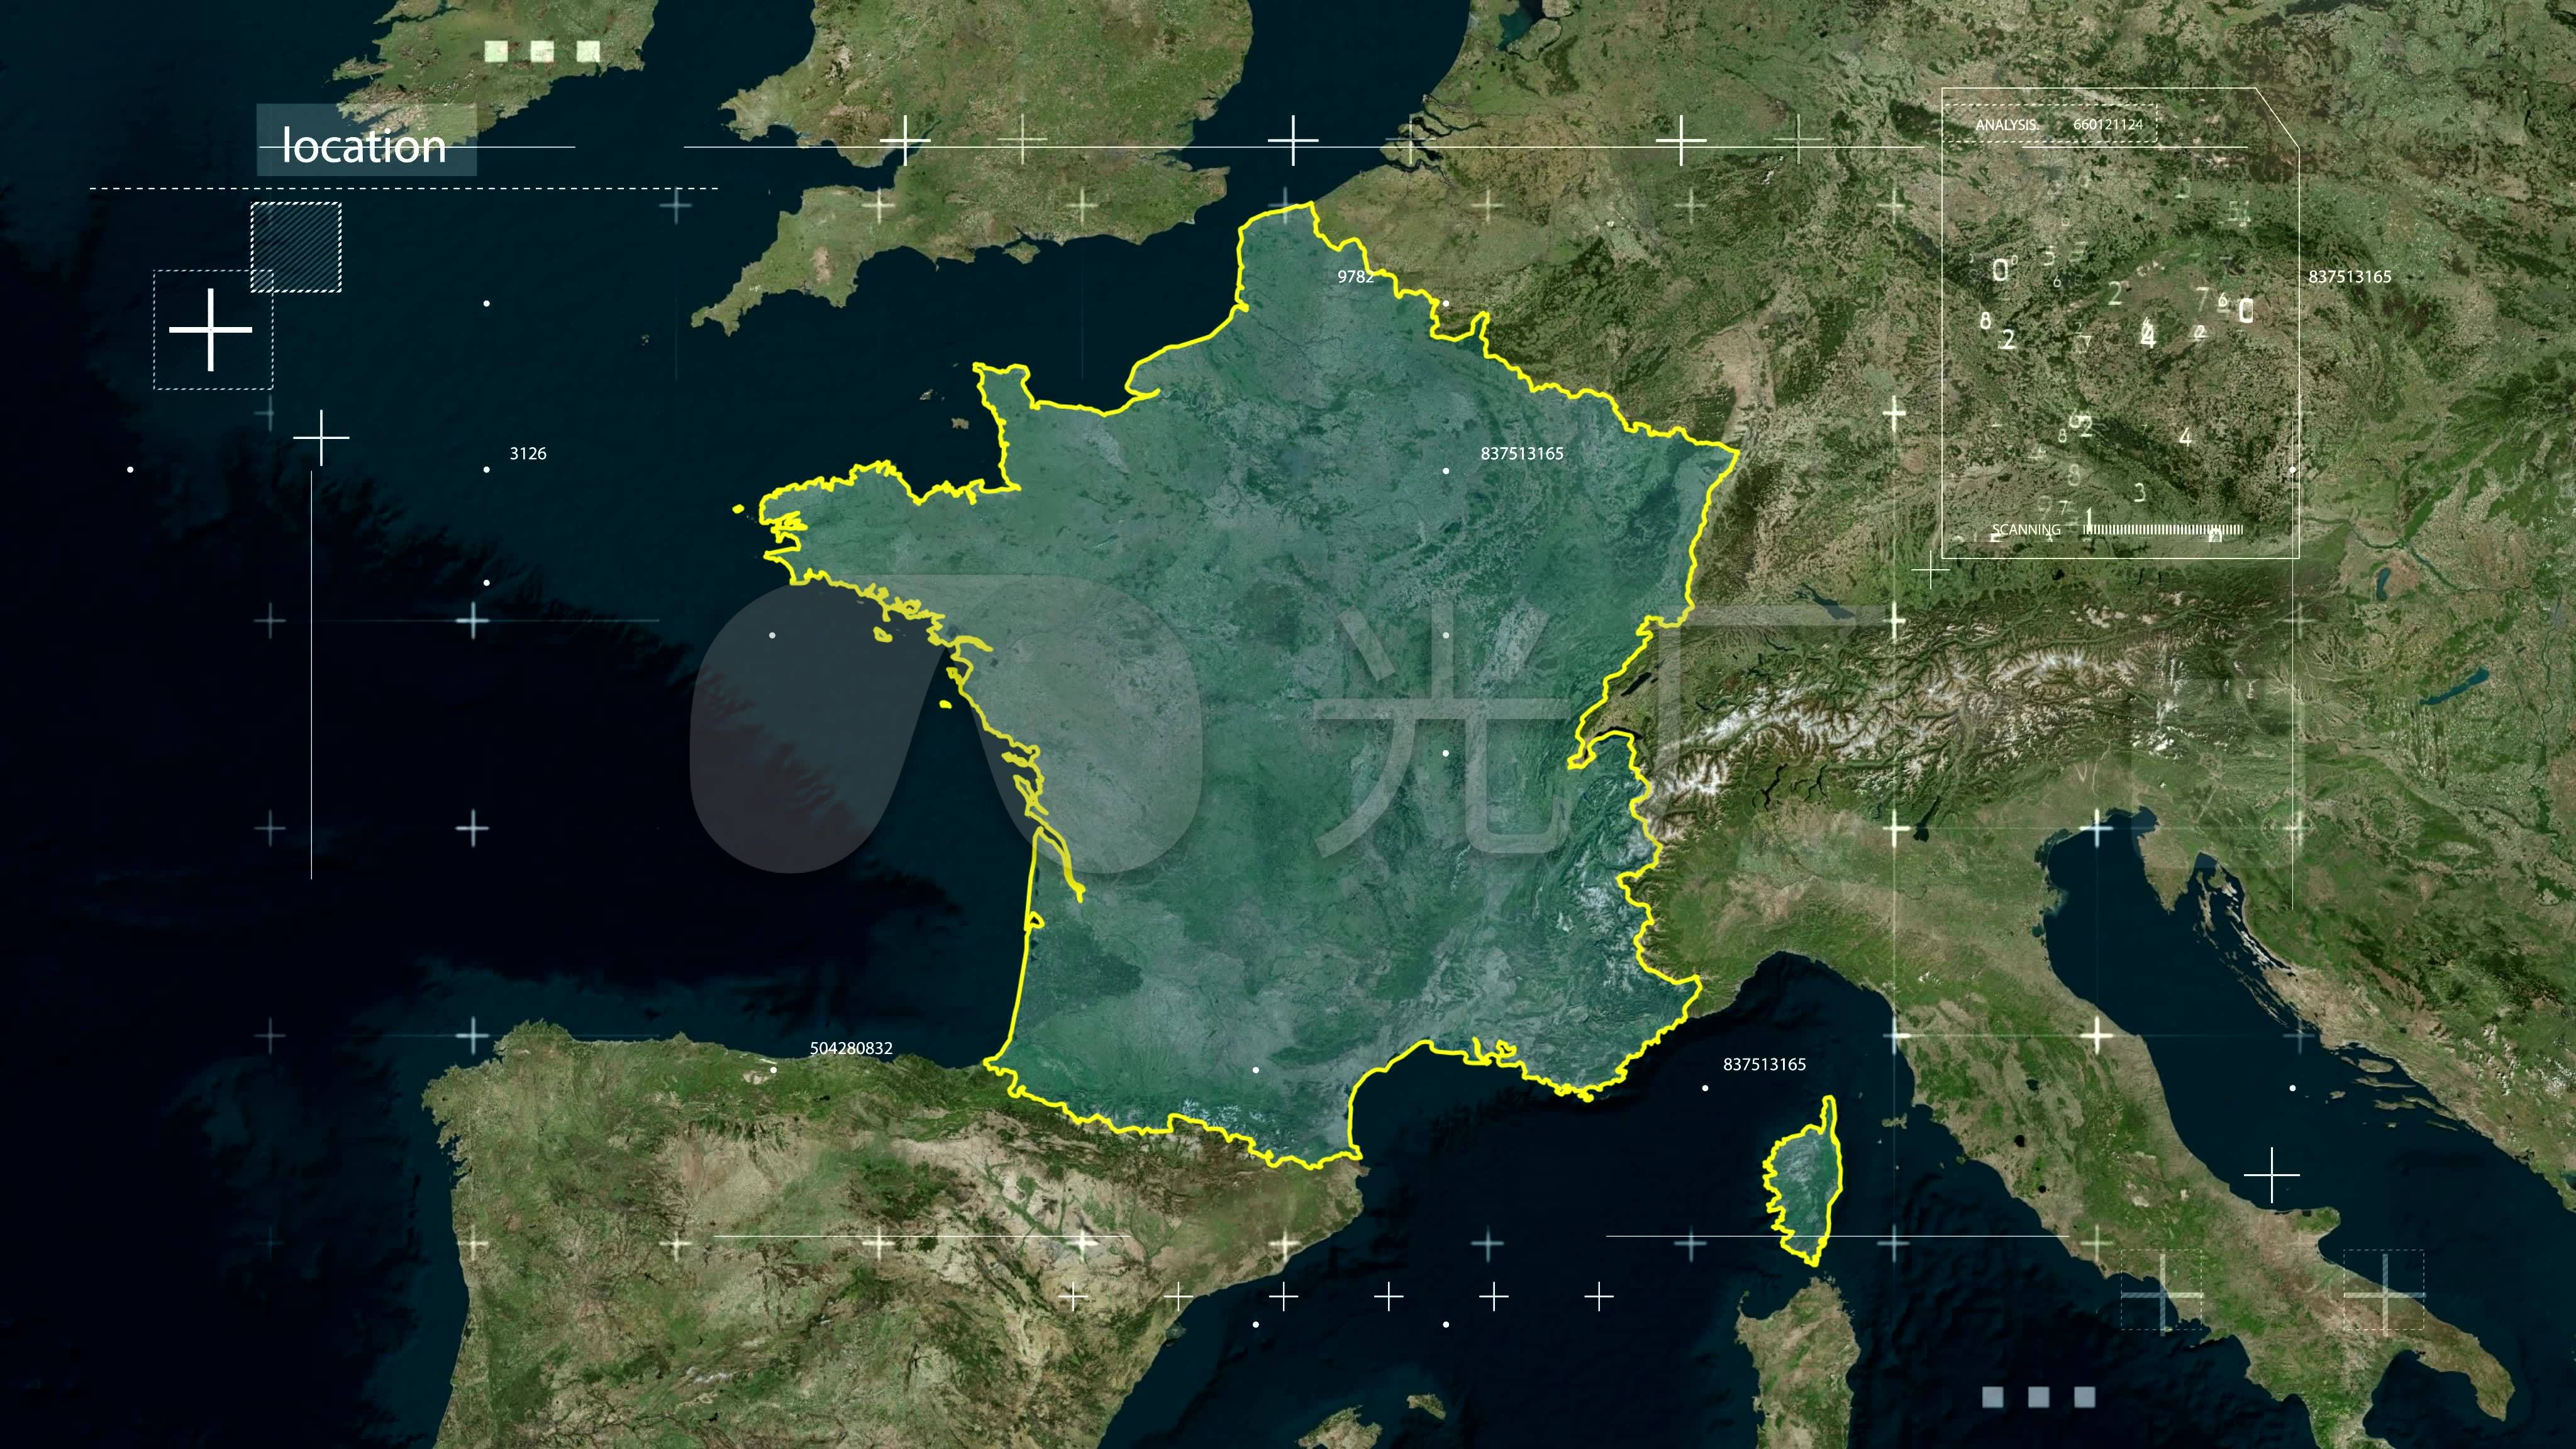 法国地图中文版_法国地图高清版大图可放大图片 - 电影天堂